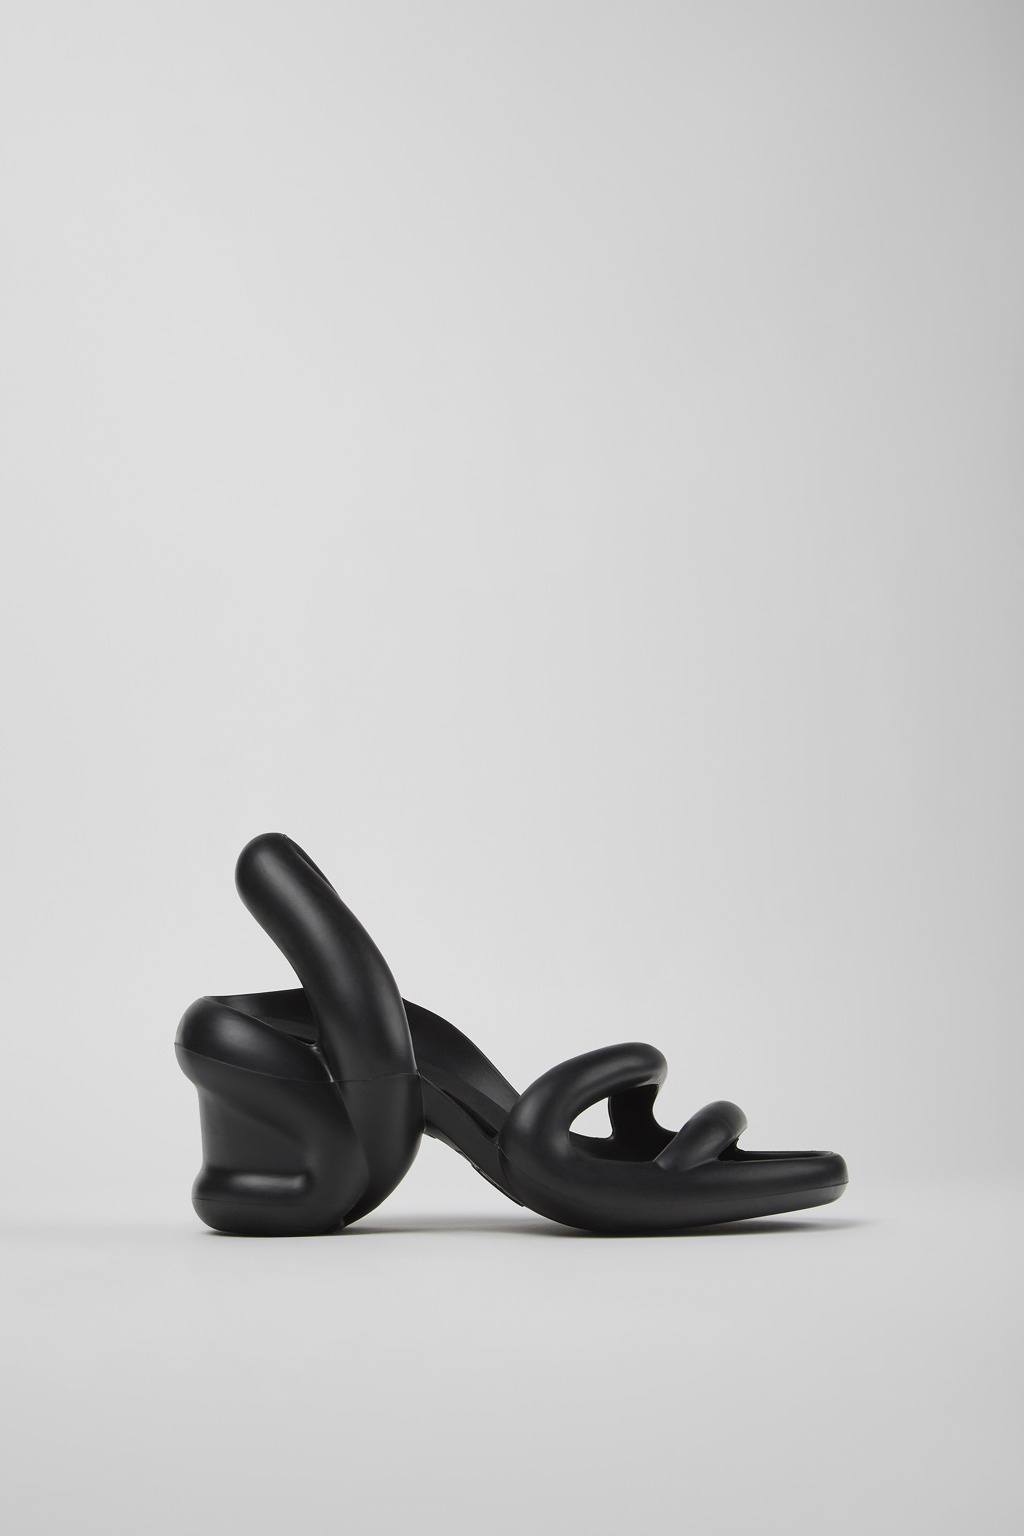 Kobarah Black Sandals for Women - Camper Shoes